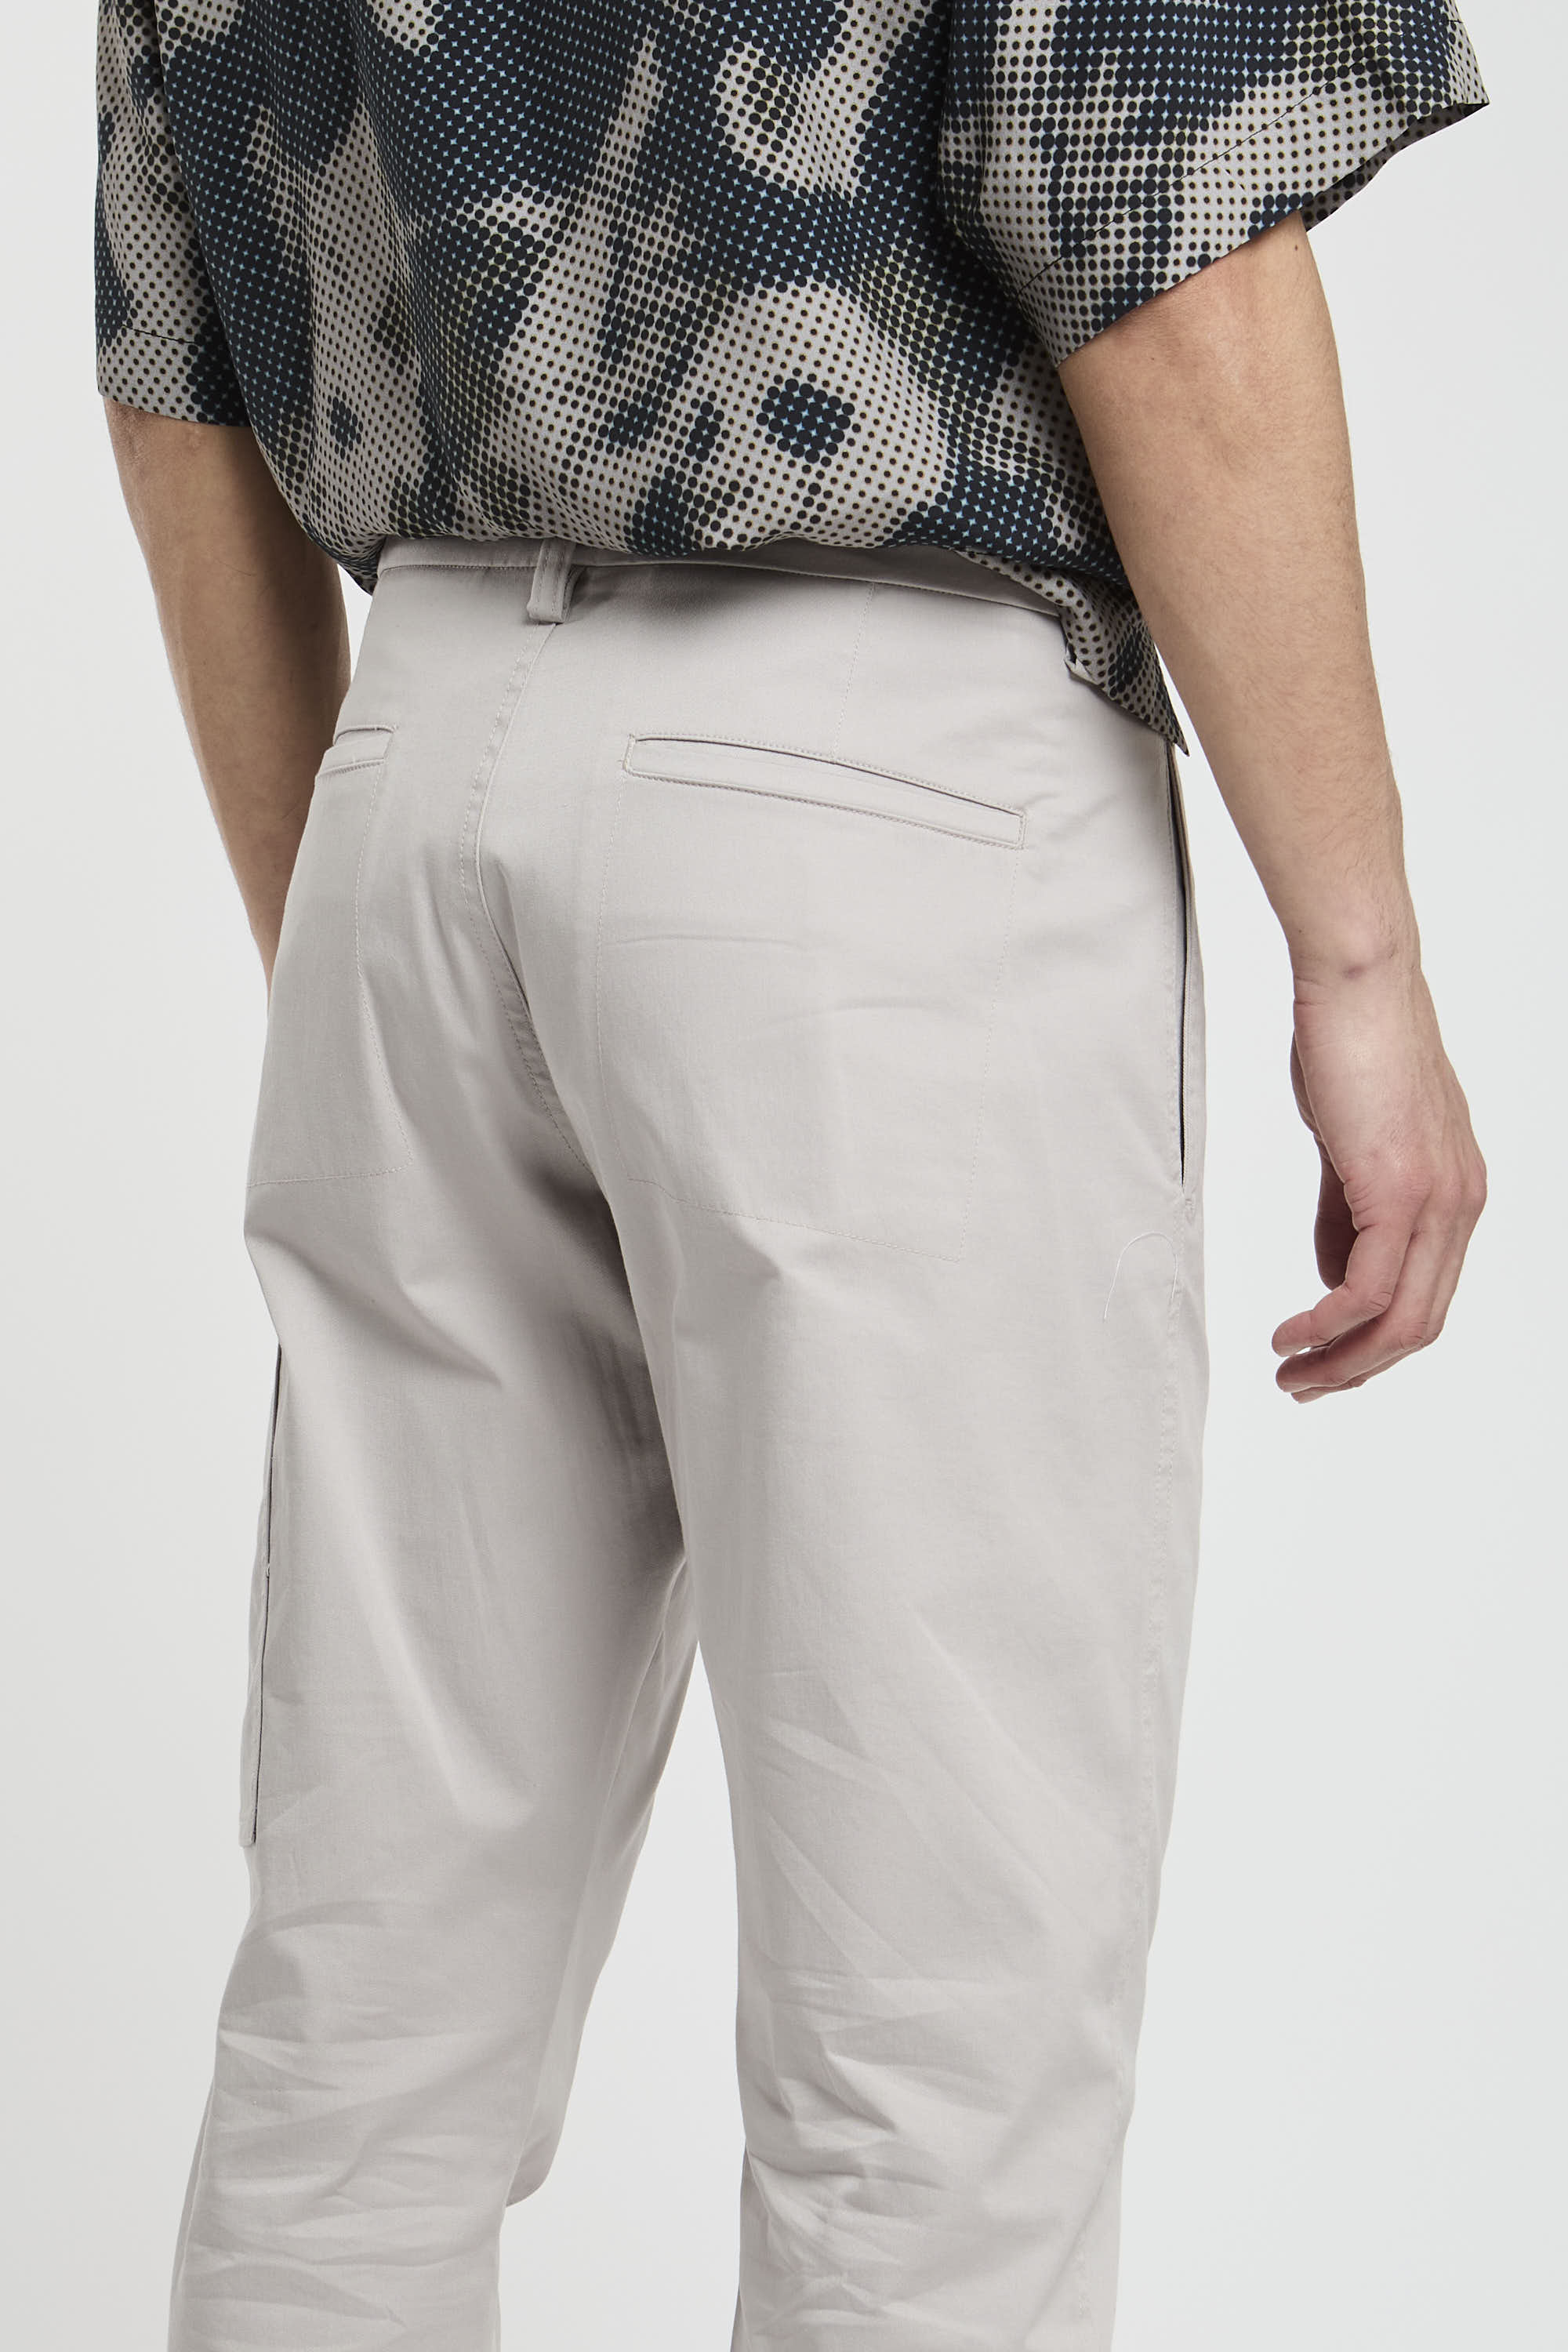 Pantalone con tasca laterale-6